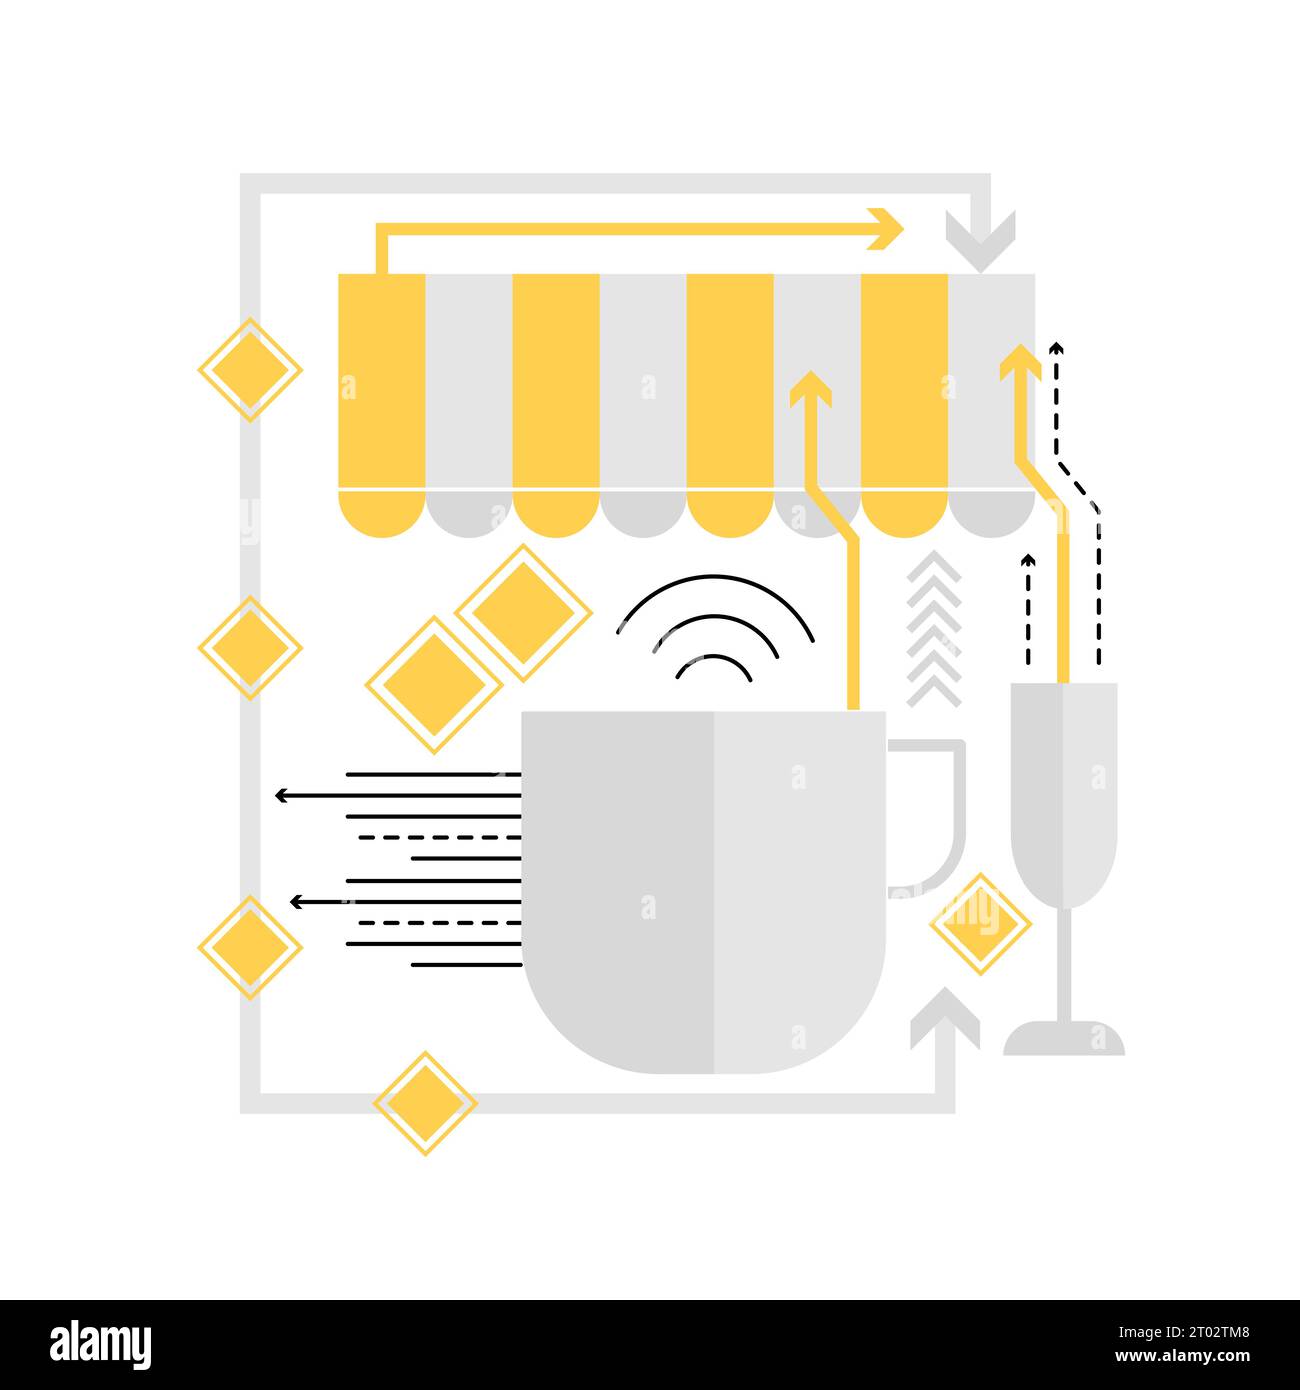 Café dans la ville intelligente. Services intelligents dans l'illustration d'icône graphique de ville innovante Illustration de Vecteur